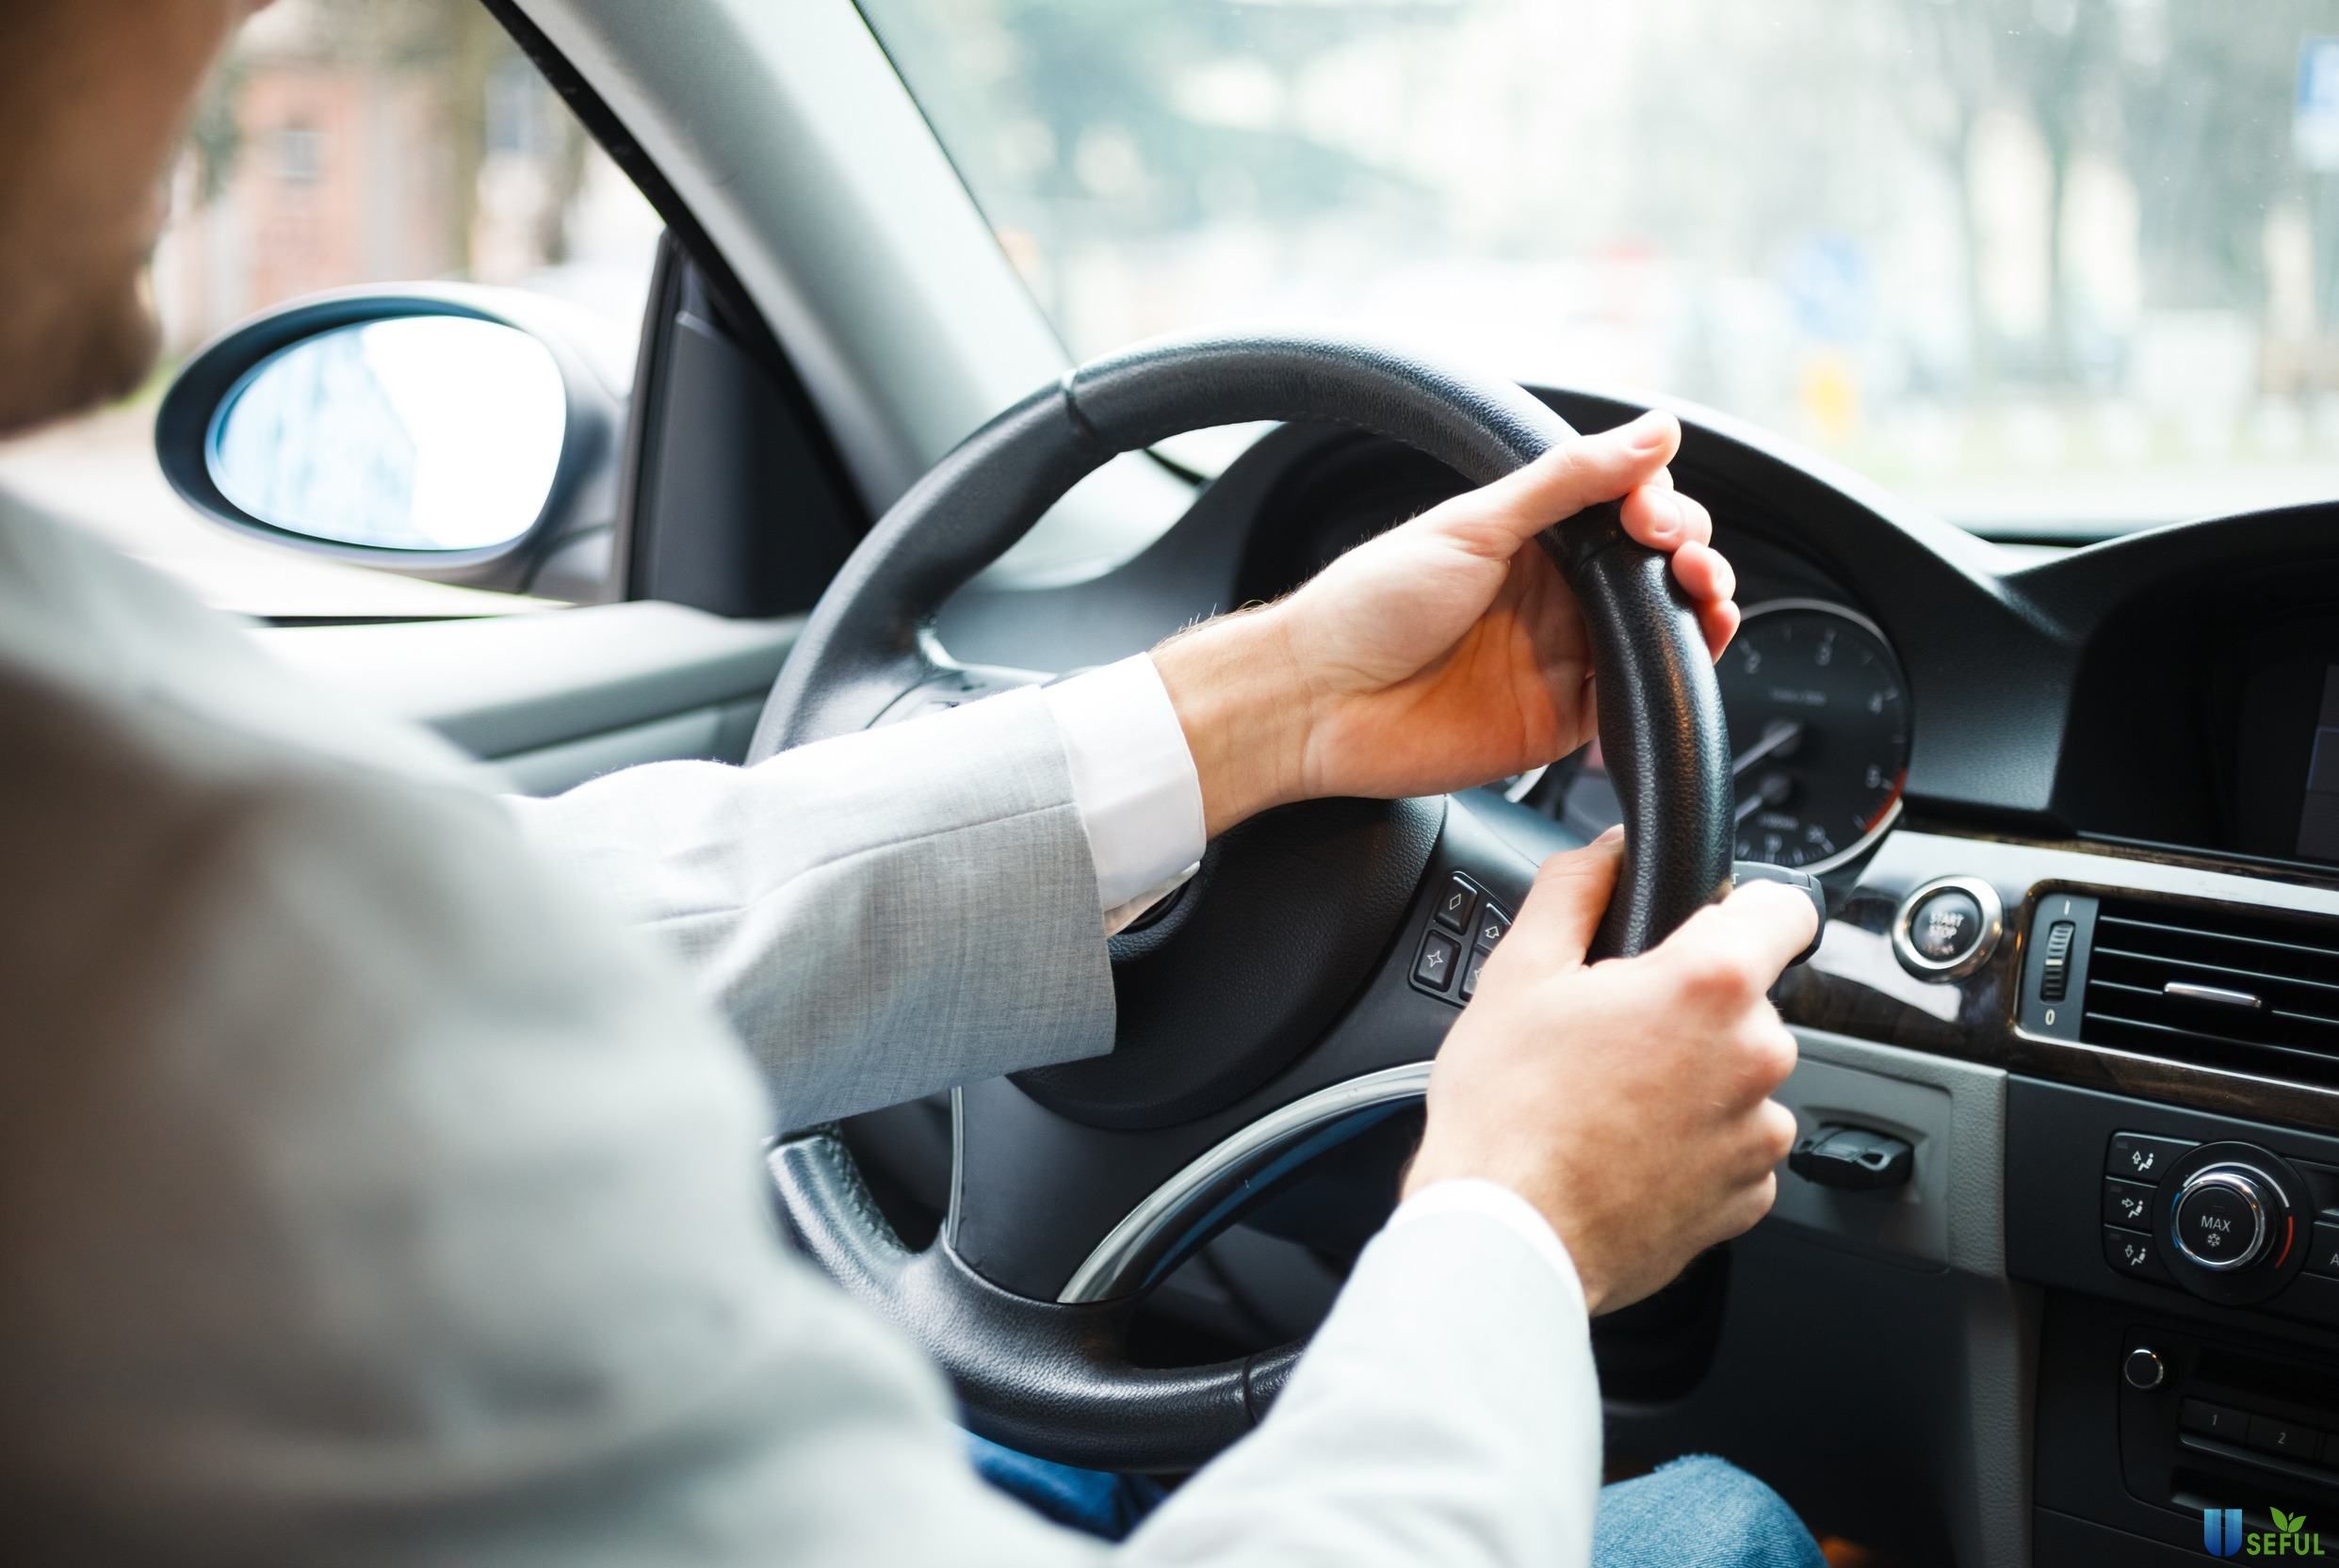 Đăng ký bảo hiểm xe ô tô giúp bảo vệ tài sản của bạn tốt nhất 